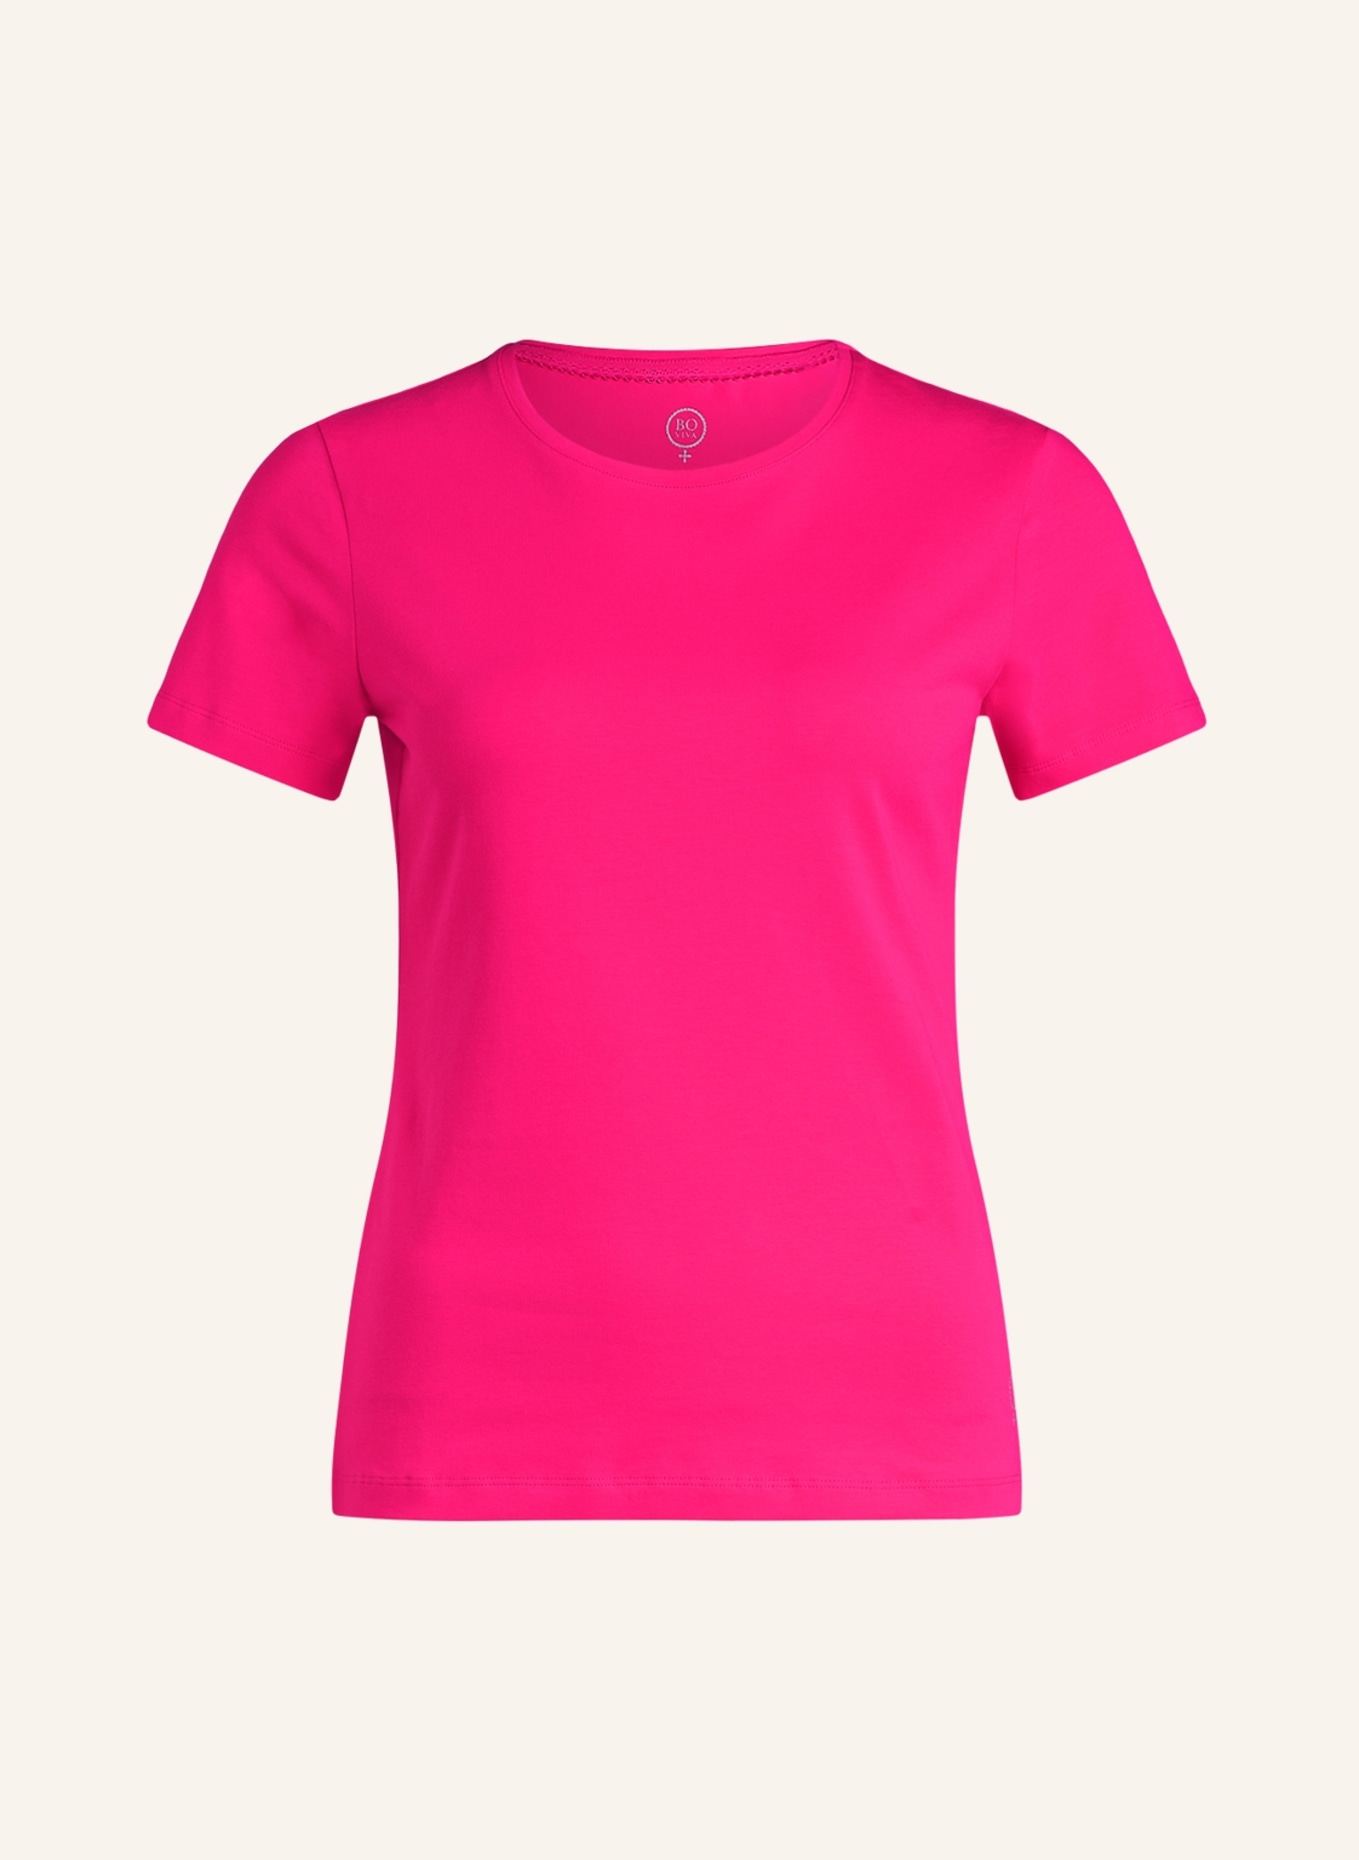 BOVIVA T-Shirt mit Schmucksteinen, Farbe: PINK (Bild 1)